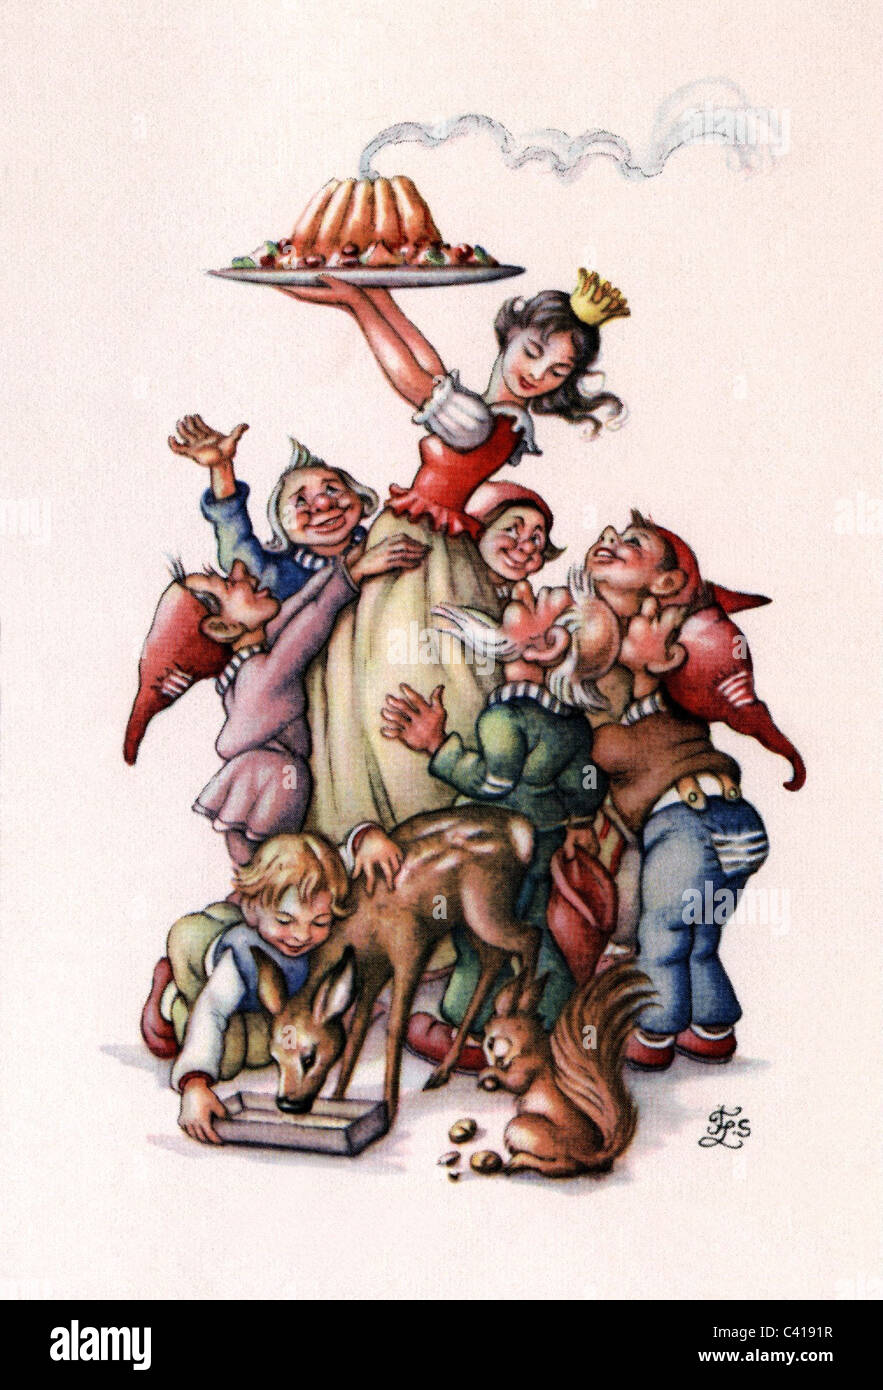 Literatur, Märchen, Grimms Märchen, 'Snow White and the Seven Dwarfs', farbige Illustration, Zusatz-Rechteklärung-nicht erhältlich Stockfoto